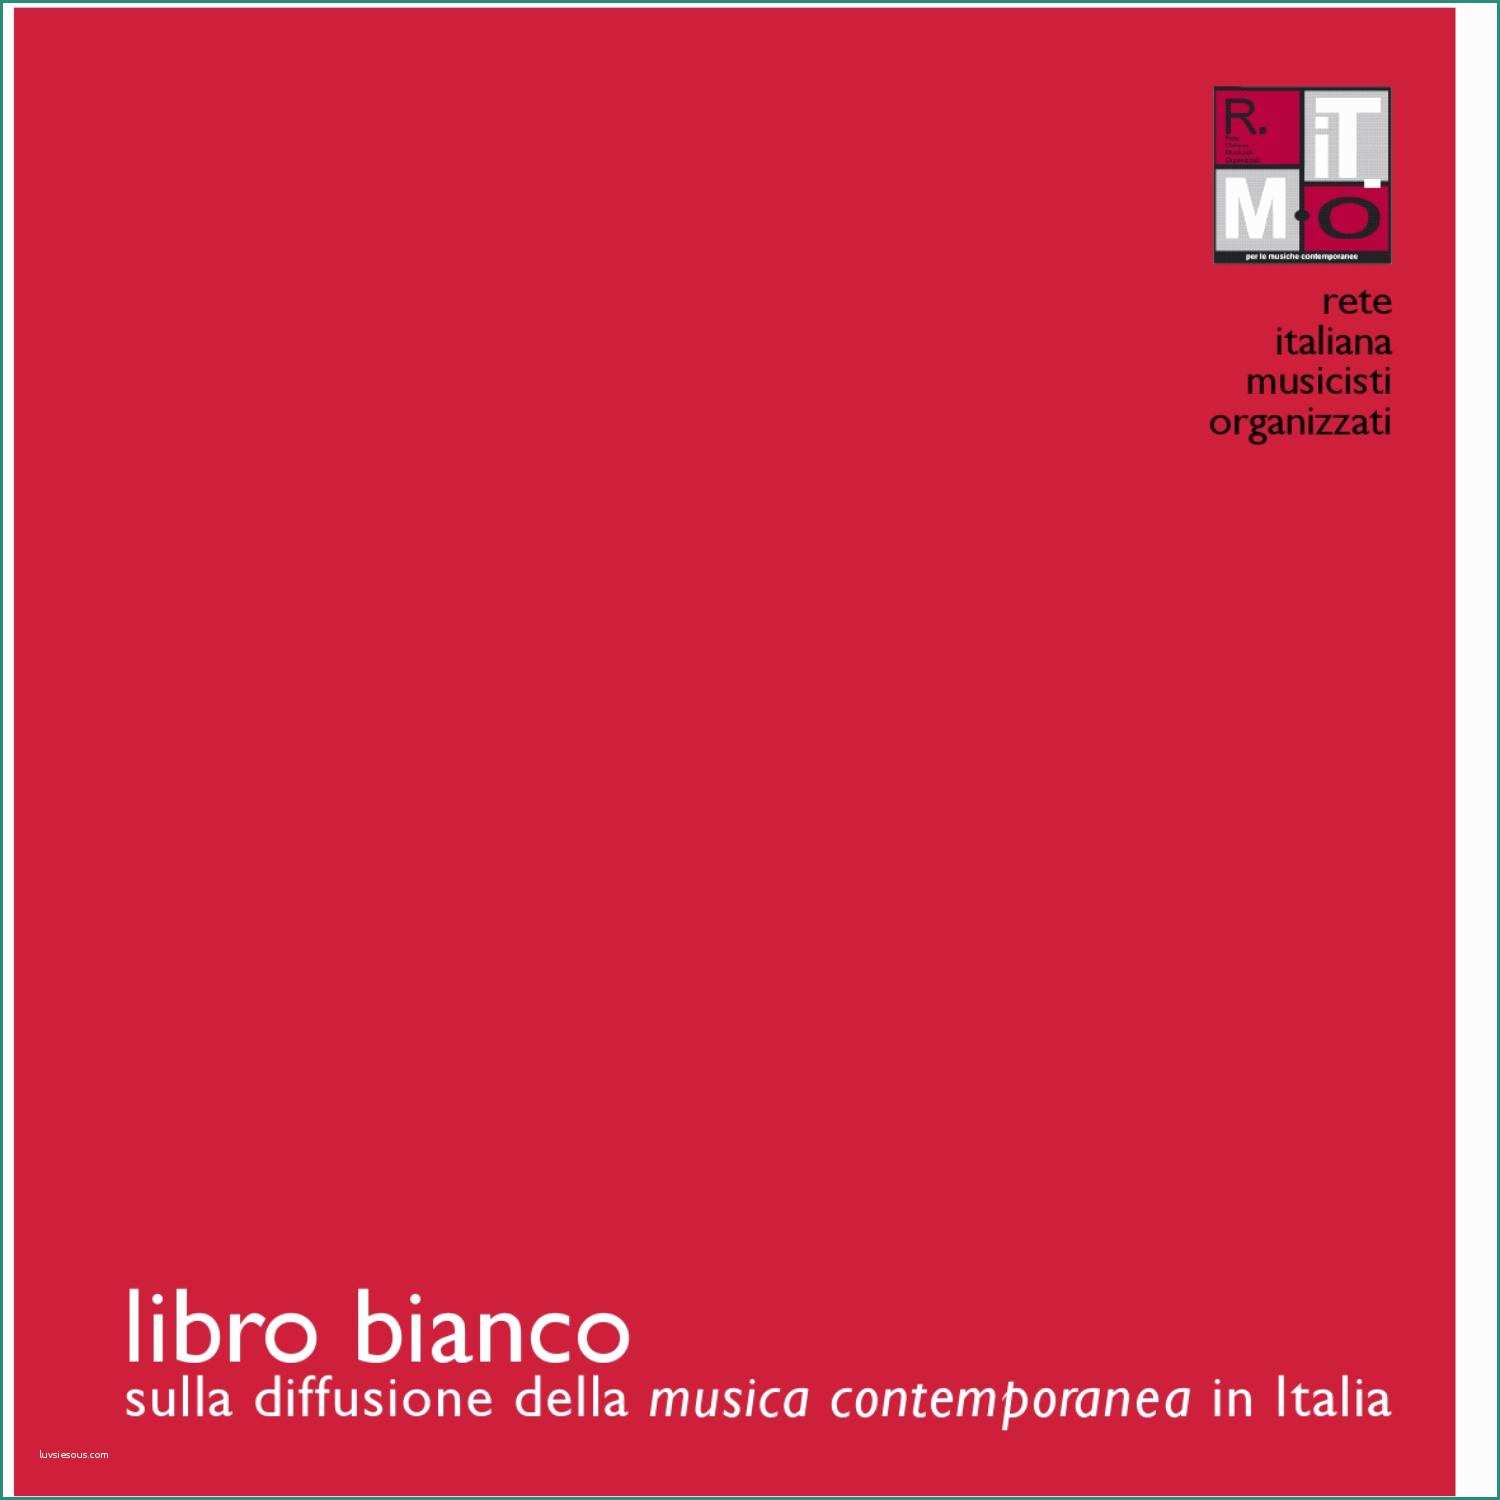 Libreria Profondita Cm E Libro Bianco by Federazione Cemat issuu